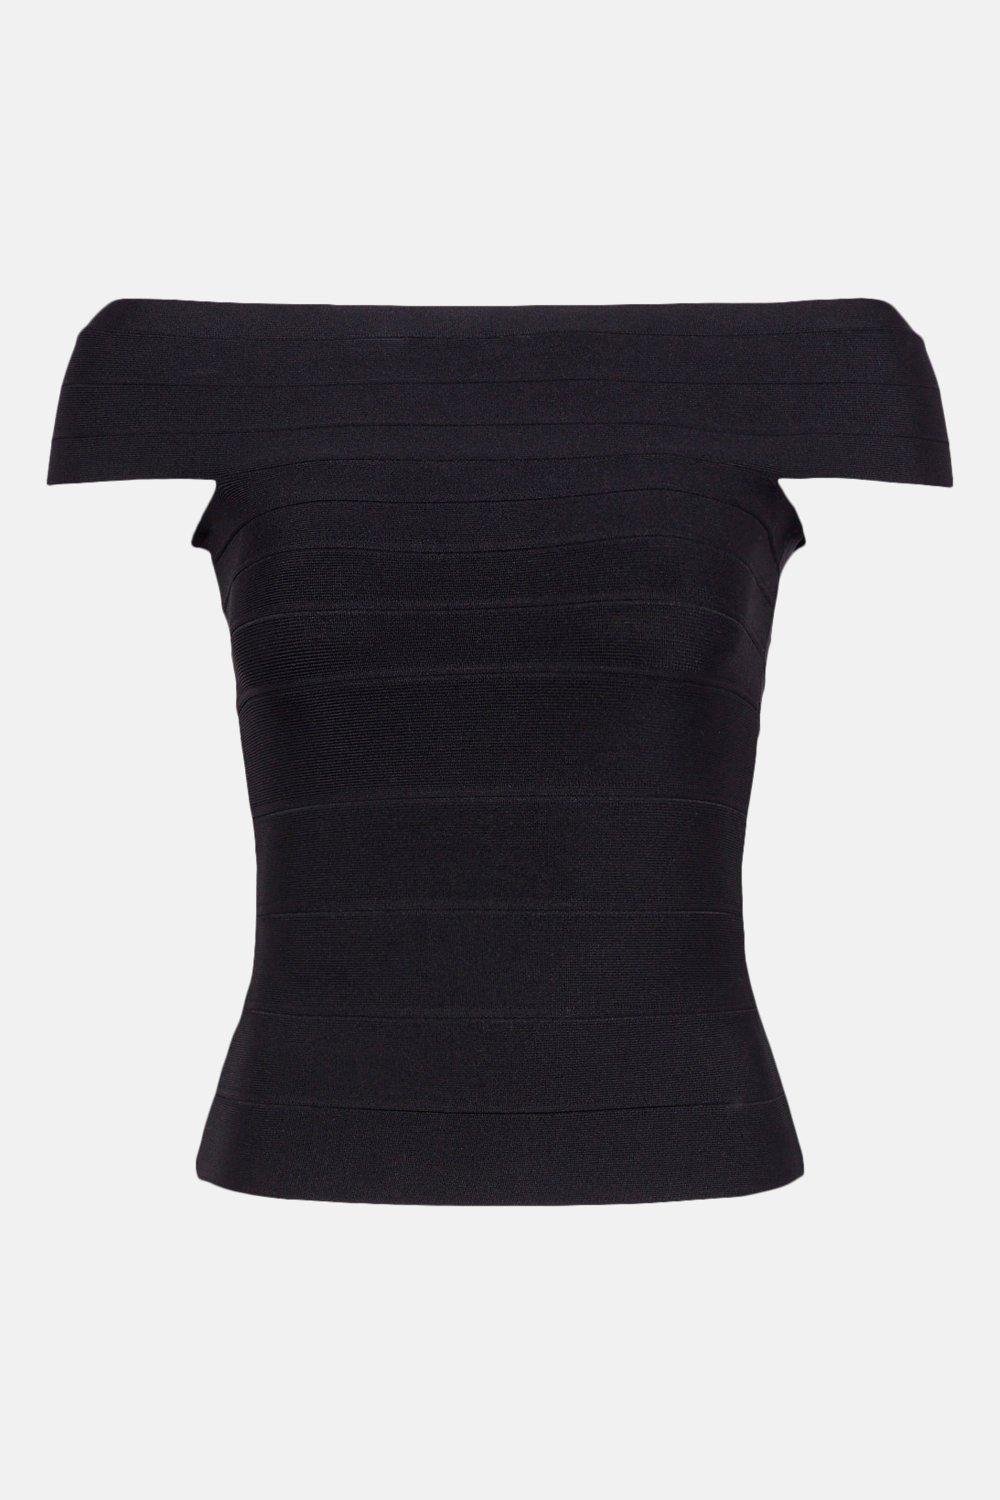 KAREN MILLEN Figure Form Bandage Bardot Knit Top in Black | Endource